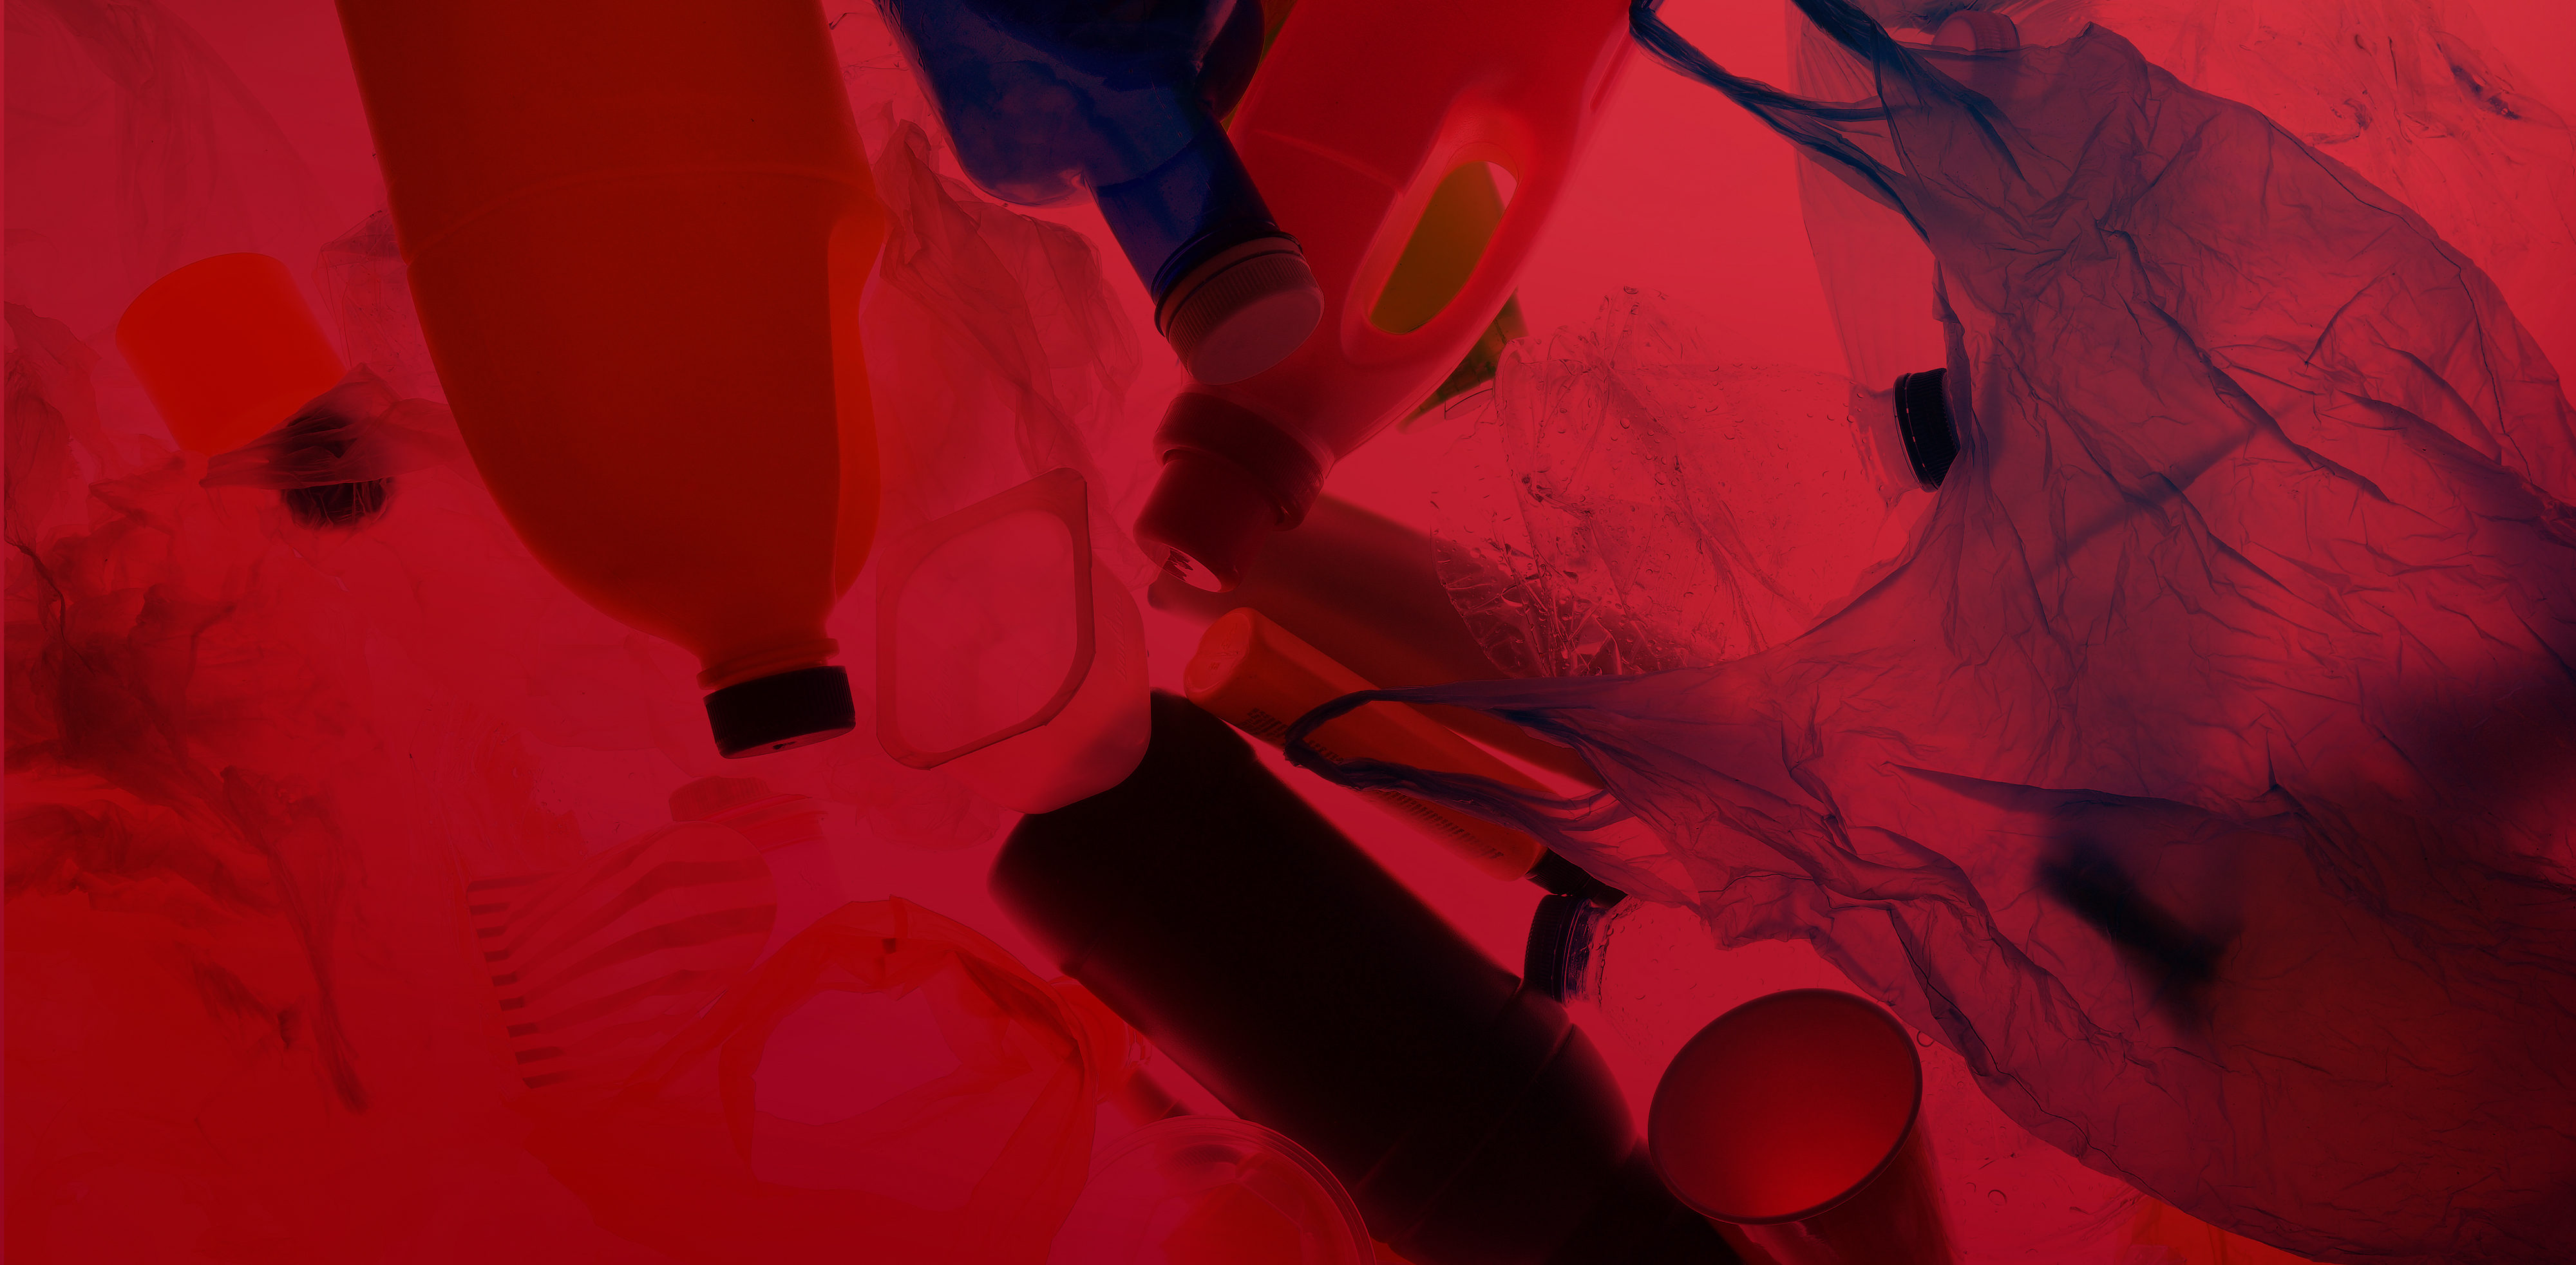 Hintergrund: Nahaufnahme von rotem Plastikmüll